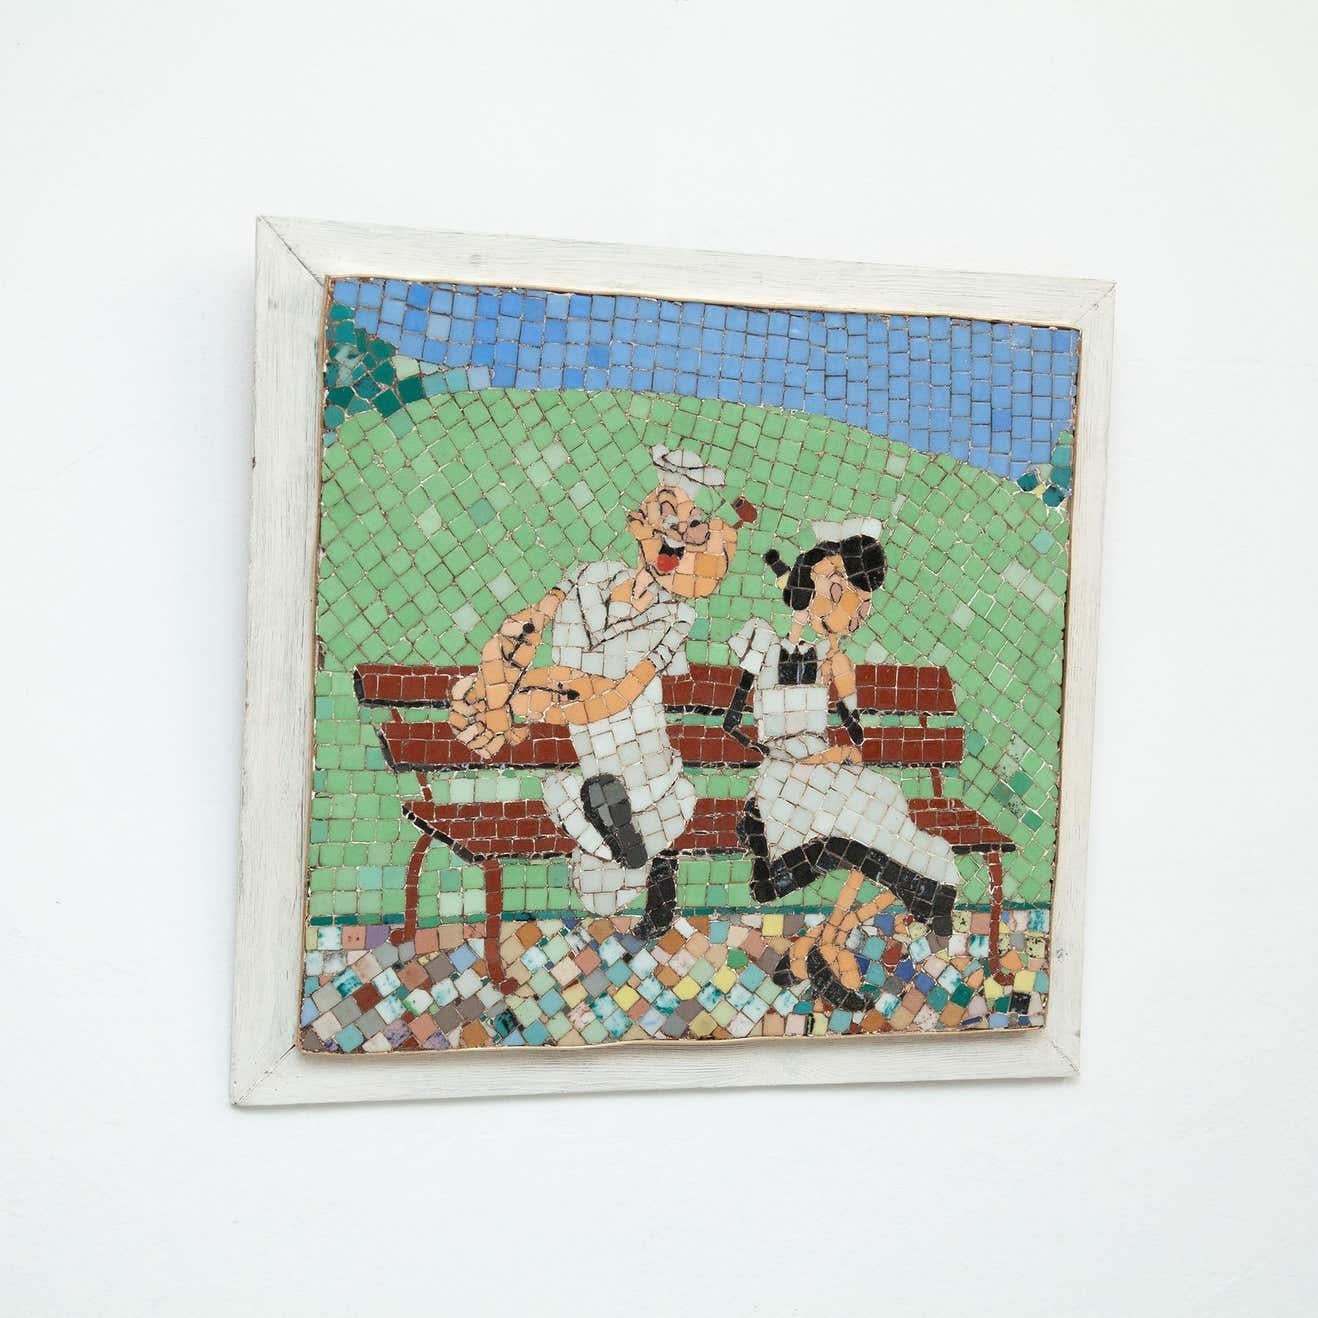 Mosaik-Kunstwerk Popeye und Olivia.
Von einem unbekannten Künstler aus Frankreich, um 1970.

Originaler Zustand mit geringen alters- und gebrauchsbedingten Abnutzungserscheinungen, der eine schöne Patina